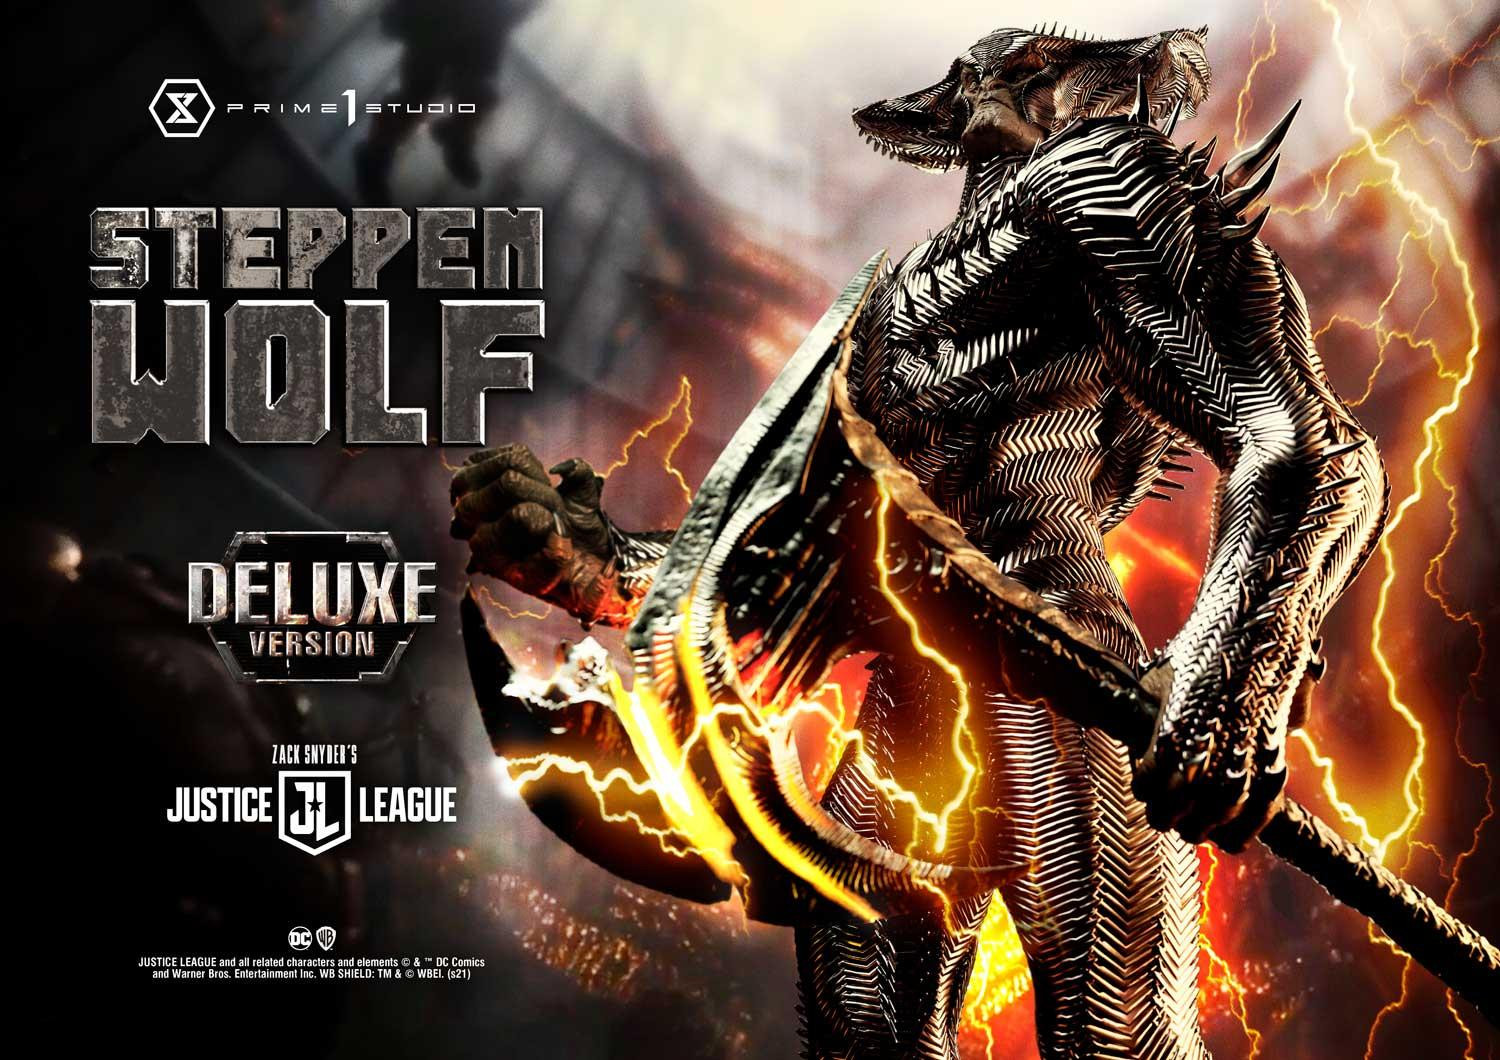 Steppenwolf 30